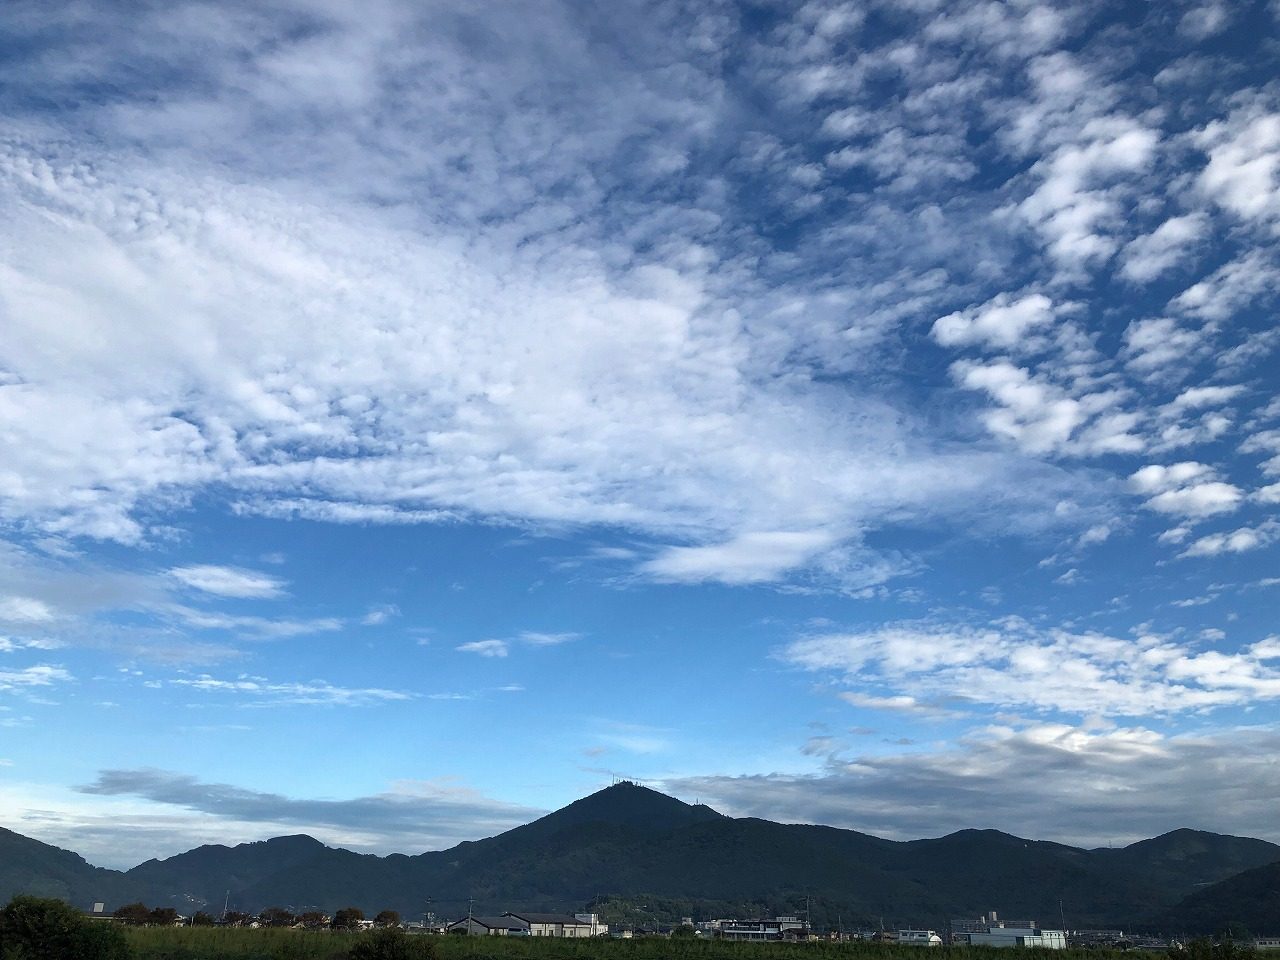 2019.9.27今朝の金峰山です。